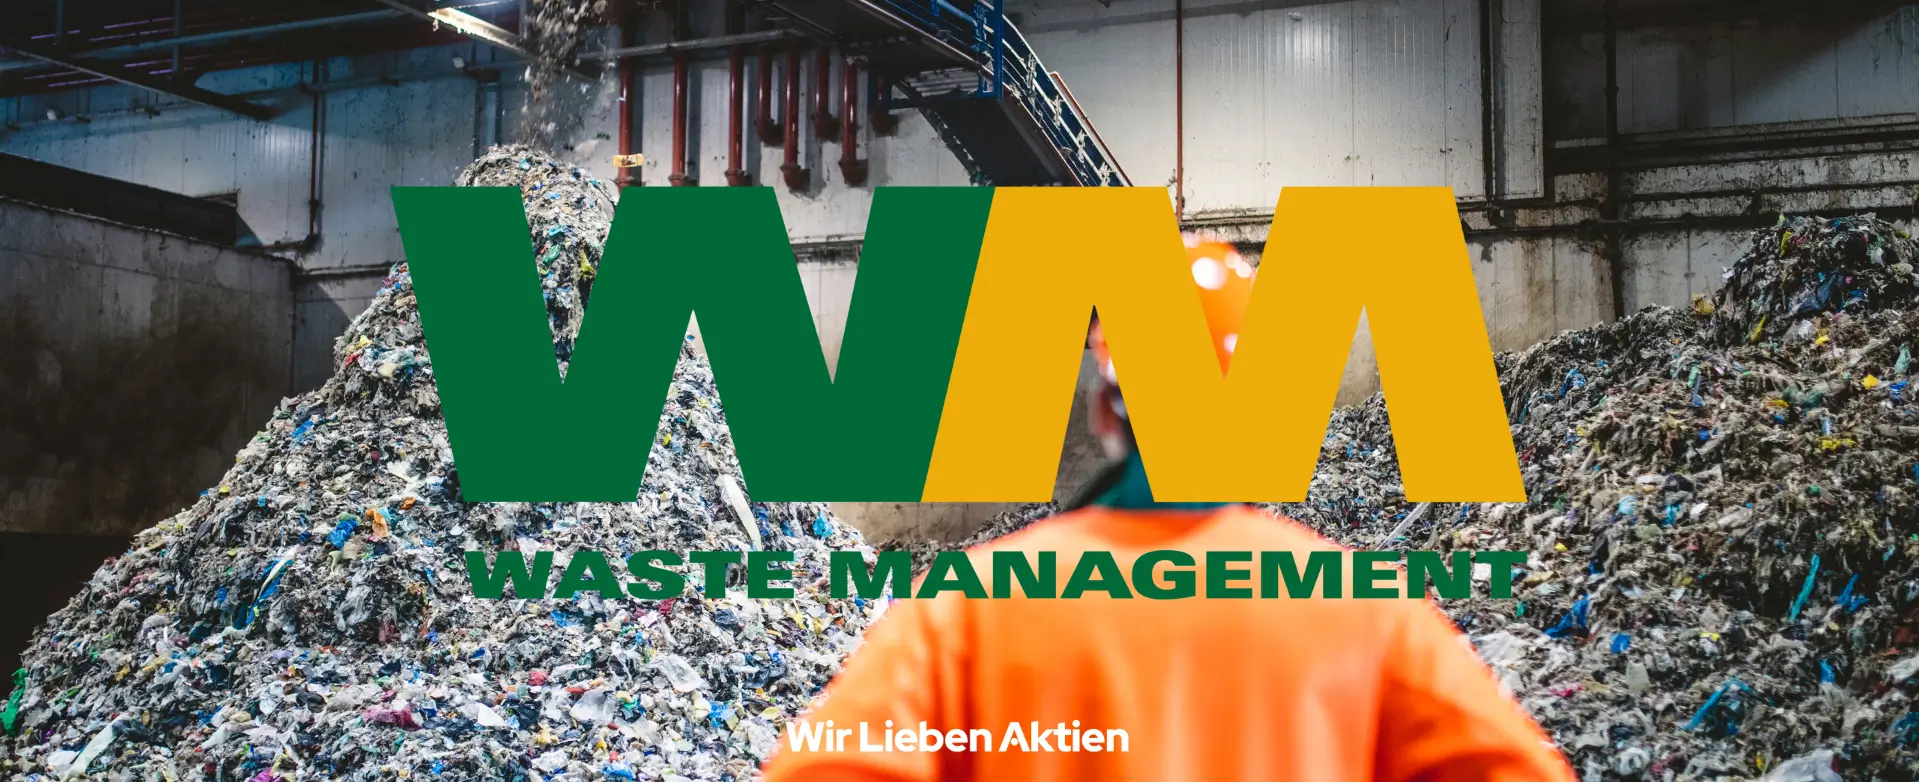 Waste Management Aktie Analyse Titelbild